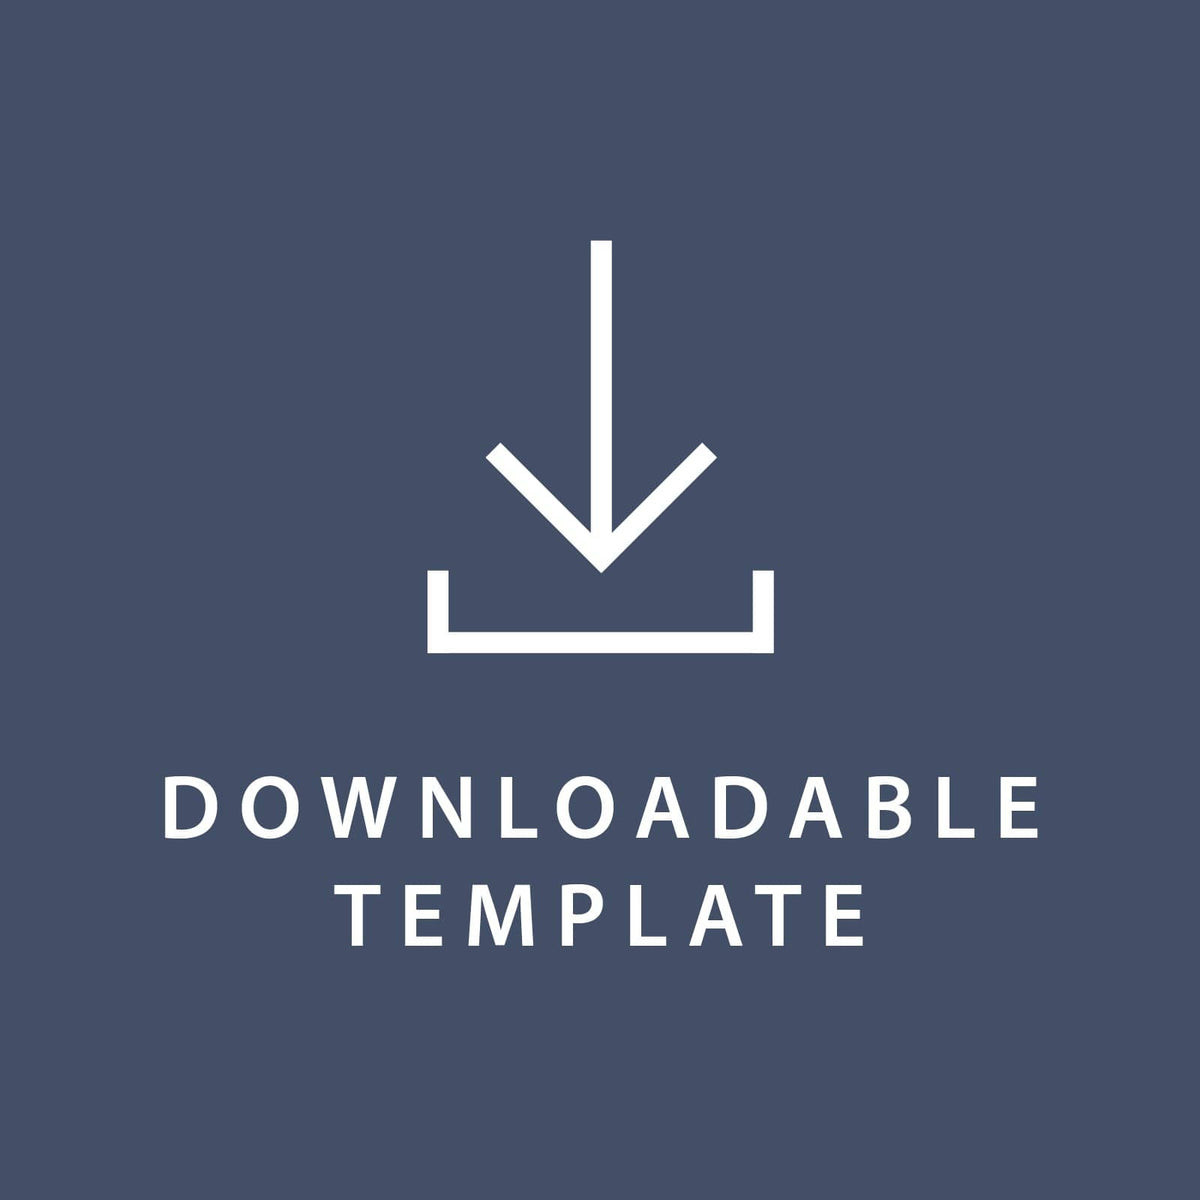 Template for 8.5 x 5.5 Invitations Gartner Studios Template tmplt0006